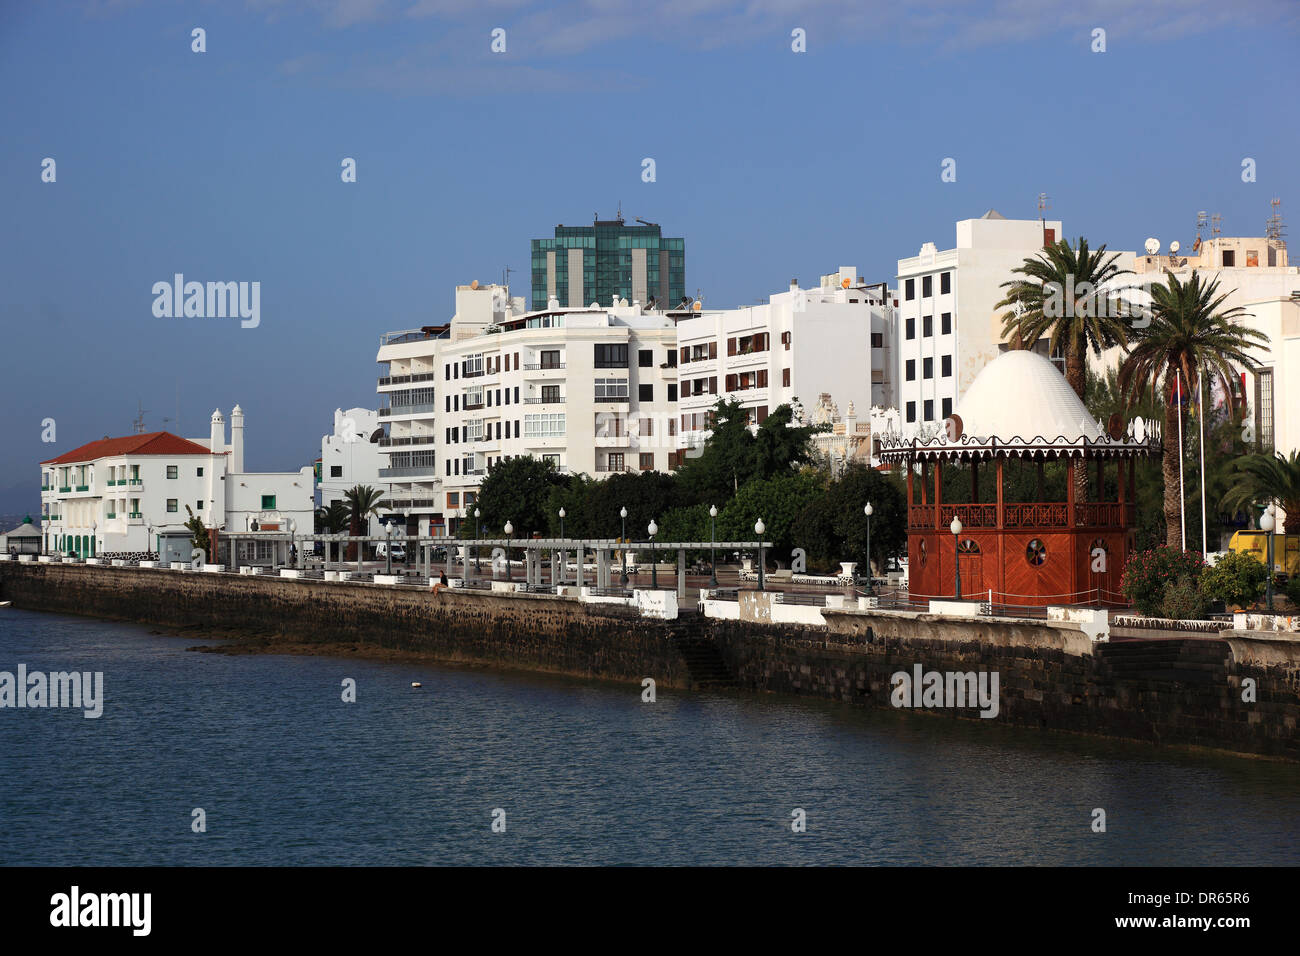 Gran Hotel, le seul immeuble de grande hauteur à Arrecife, Lanzarote, îles canaries, espagne Banque D'Images